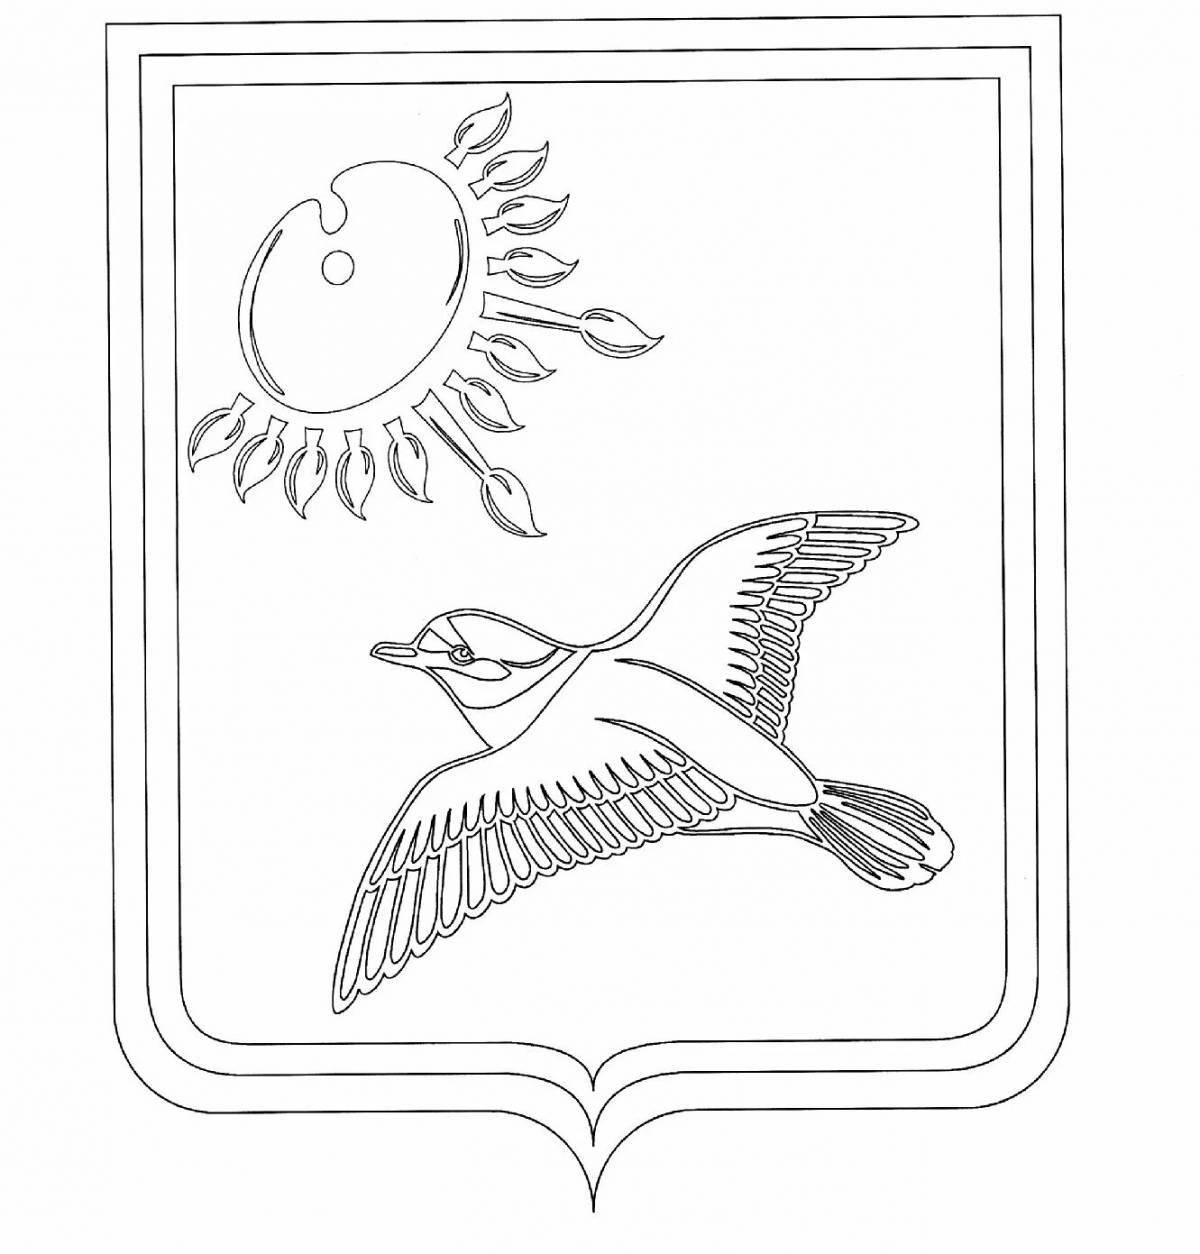 Грандиозный герб кировской области